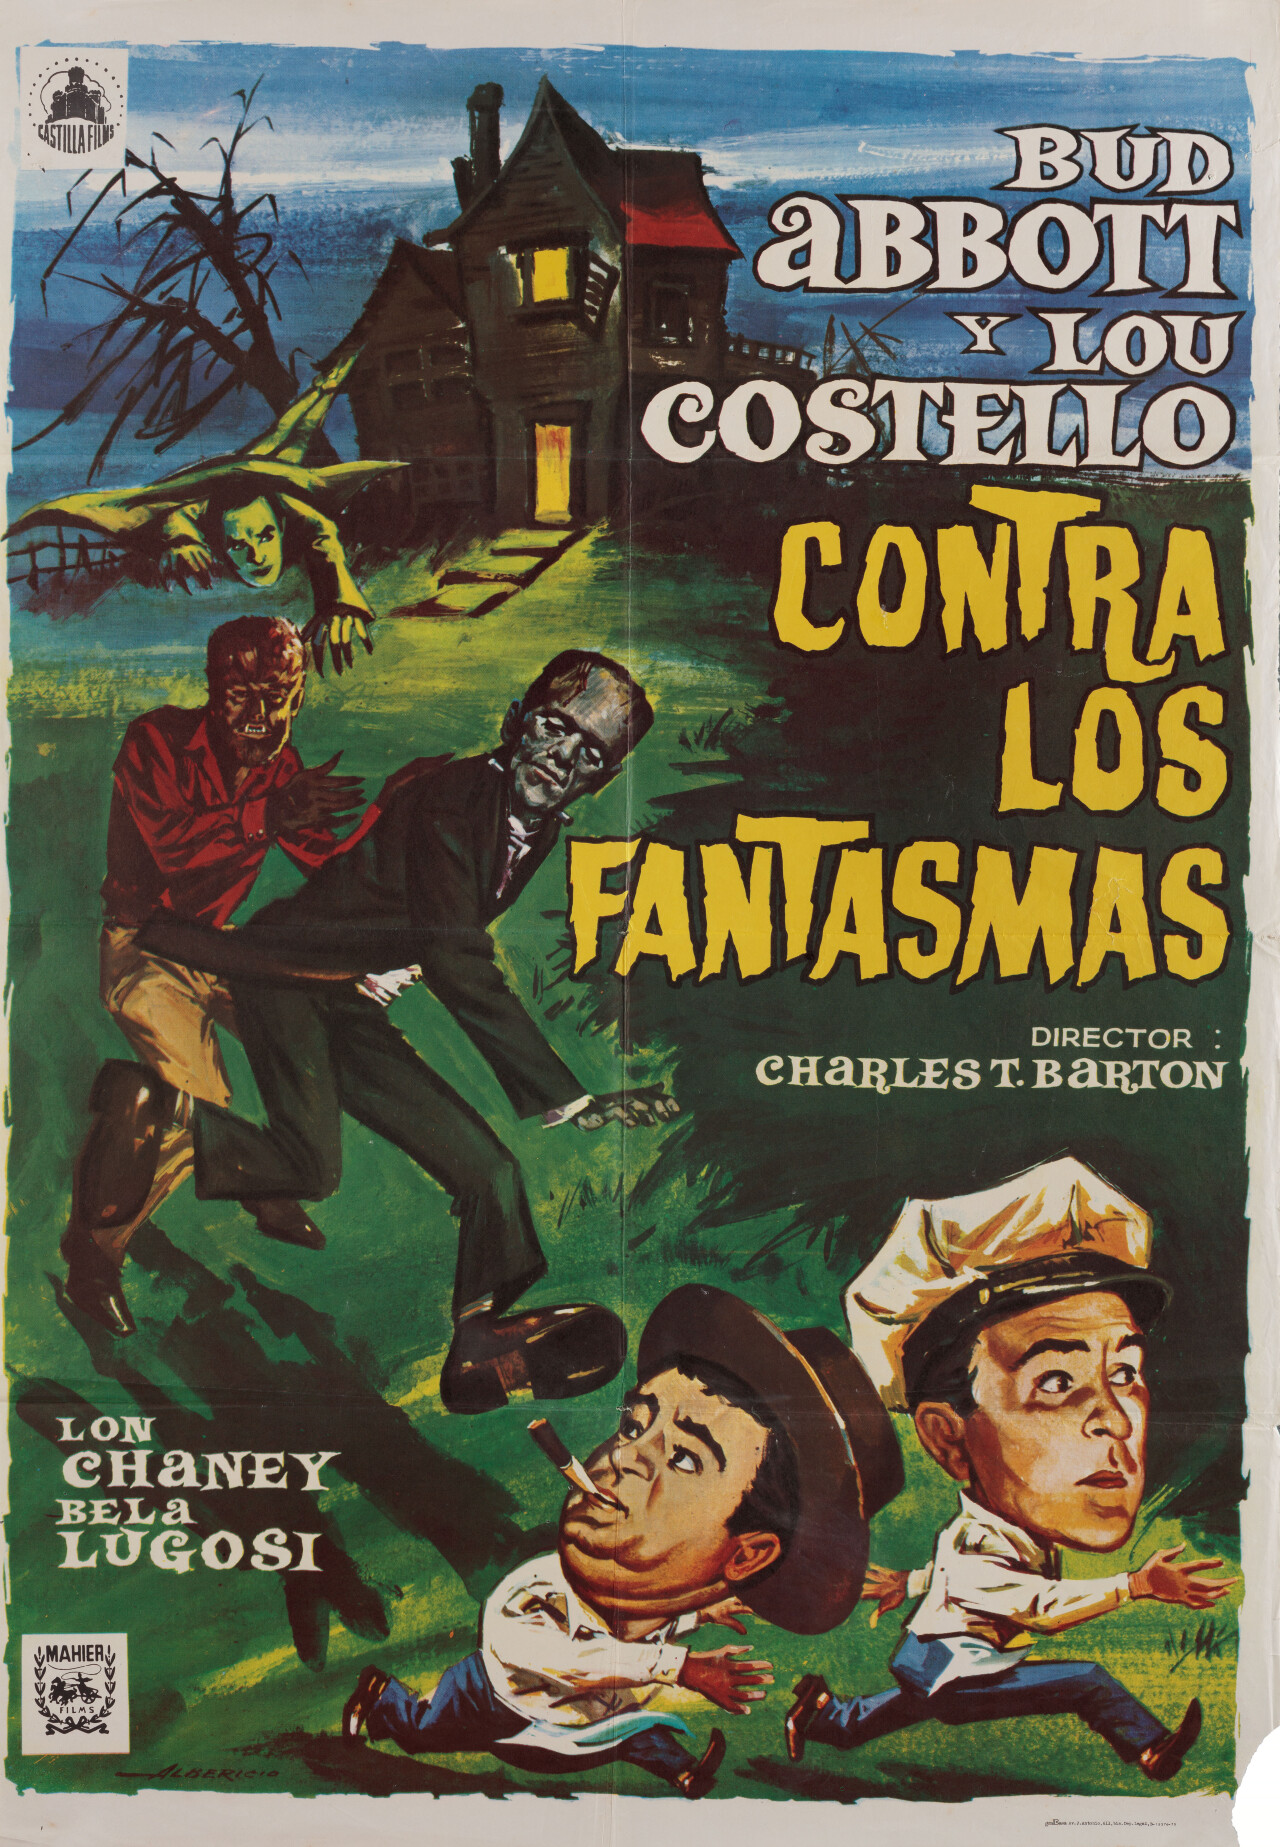 Эбботт и Костелло встречают Франкенштейна (Abbott and Costello Meet Frankenstein, 1948), режиссёр Чарльз Бартон, испанский постер к фильму, автор Фернандо Альберисио (ужасы, 1975 год)